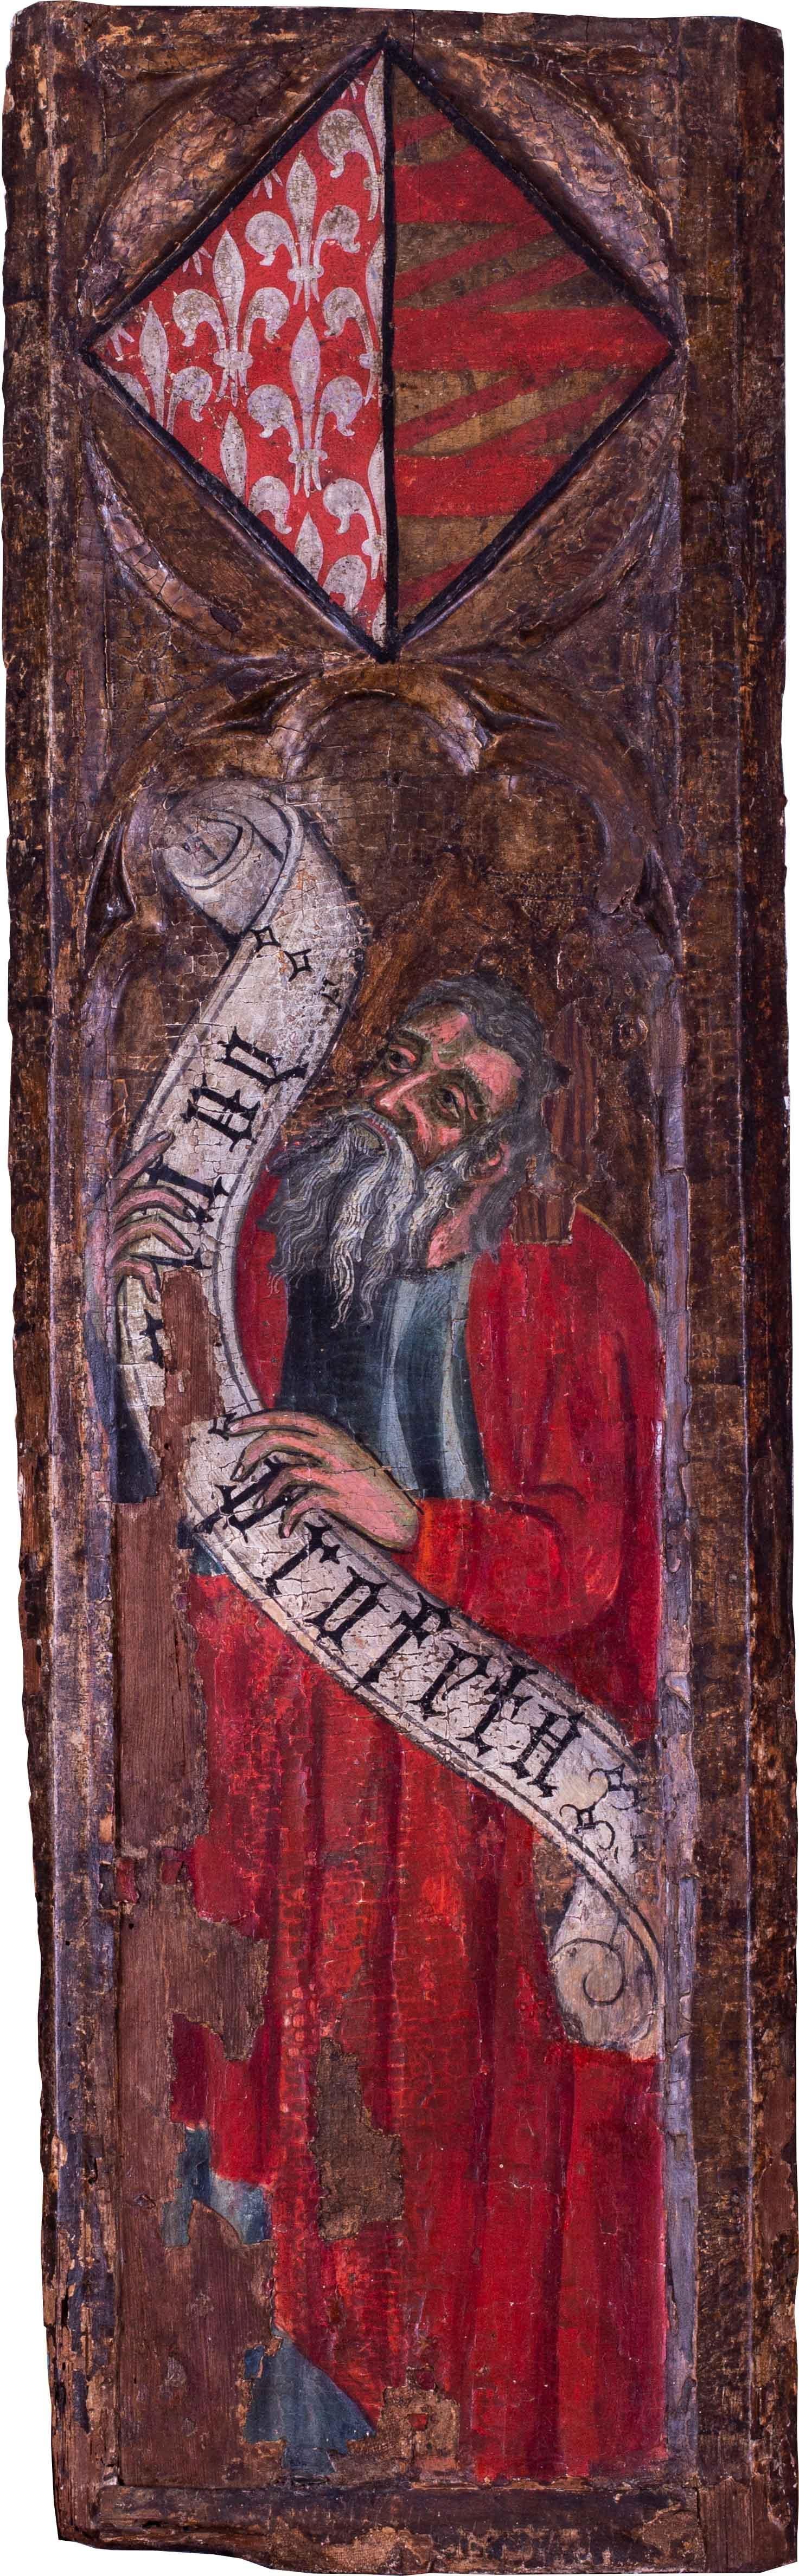 Circa 1400, école espagnole du prophète Daniel, tempera sur panneau avec dorure